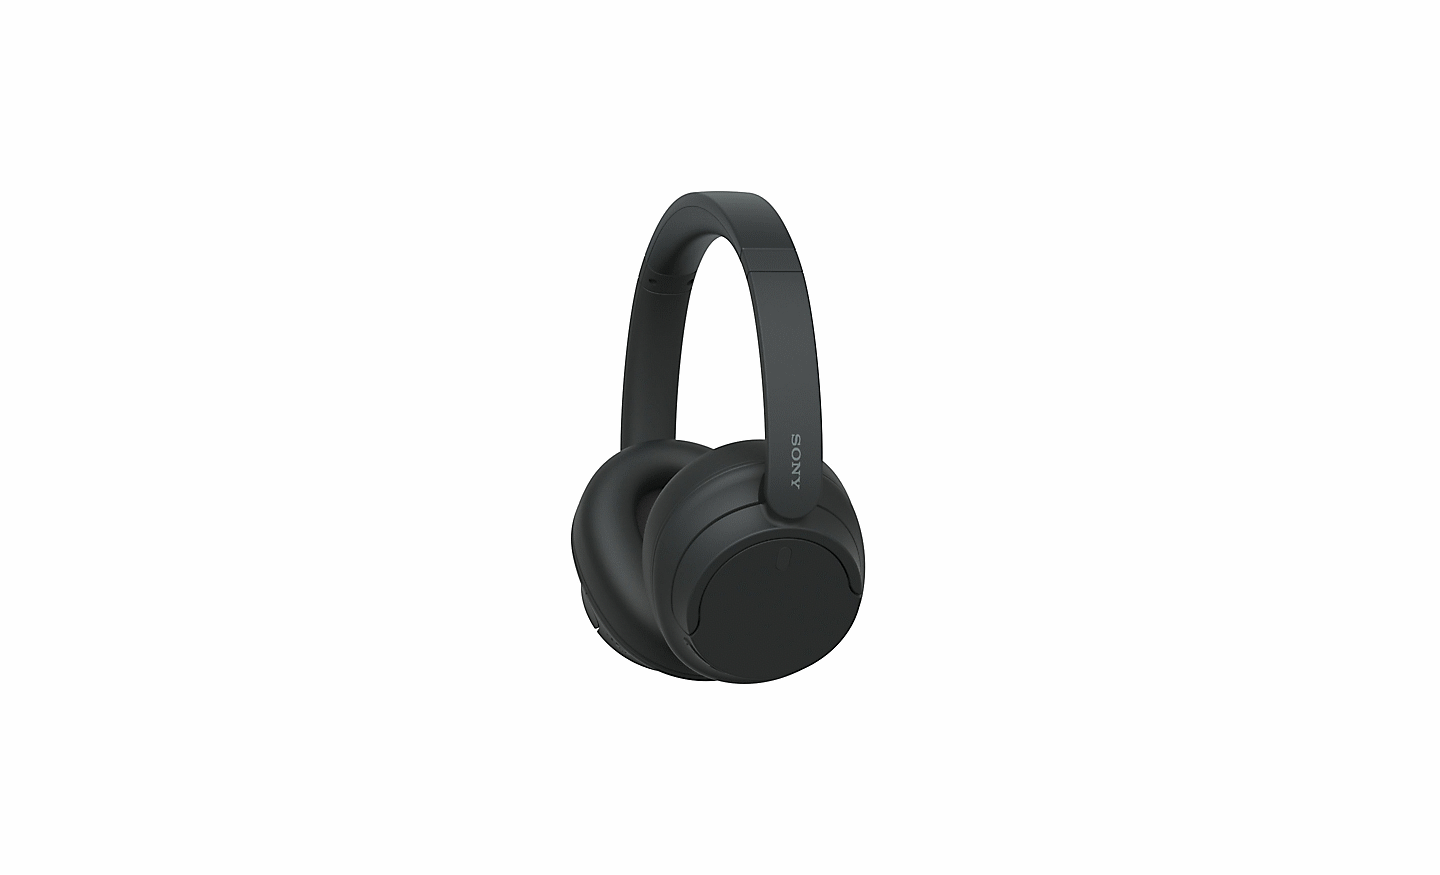 흰색 배경 위에 있는 블랙 색상의 소니 WH-CH720 헤드폰 이미지